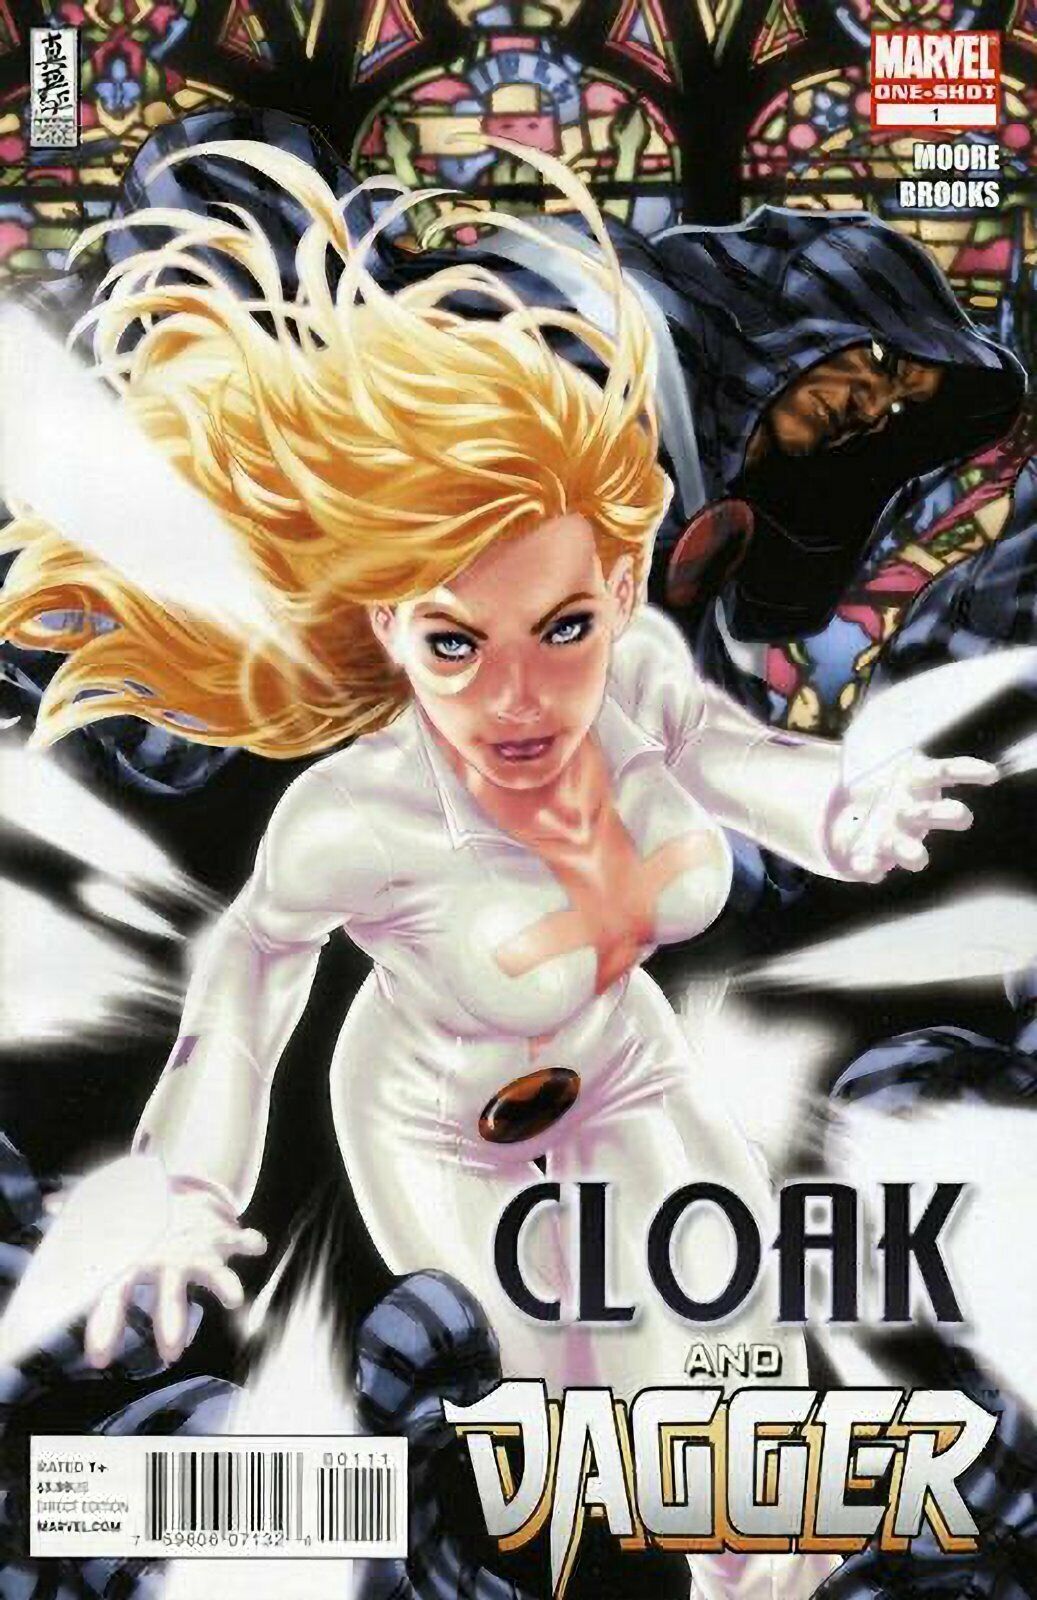 Cloak and Dagger #1 (2010) Marvel Comics